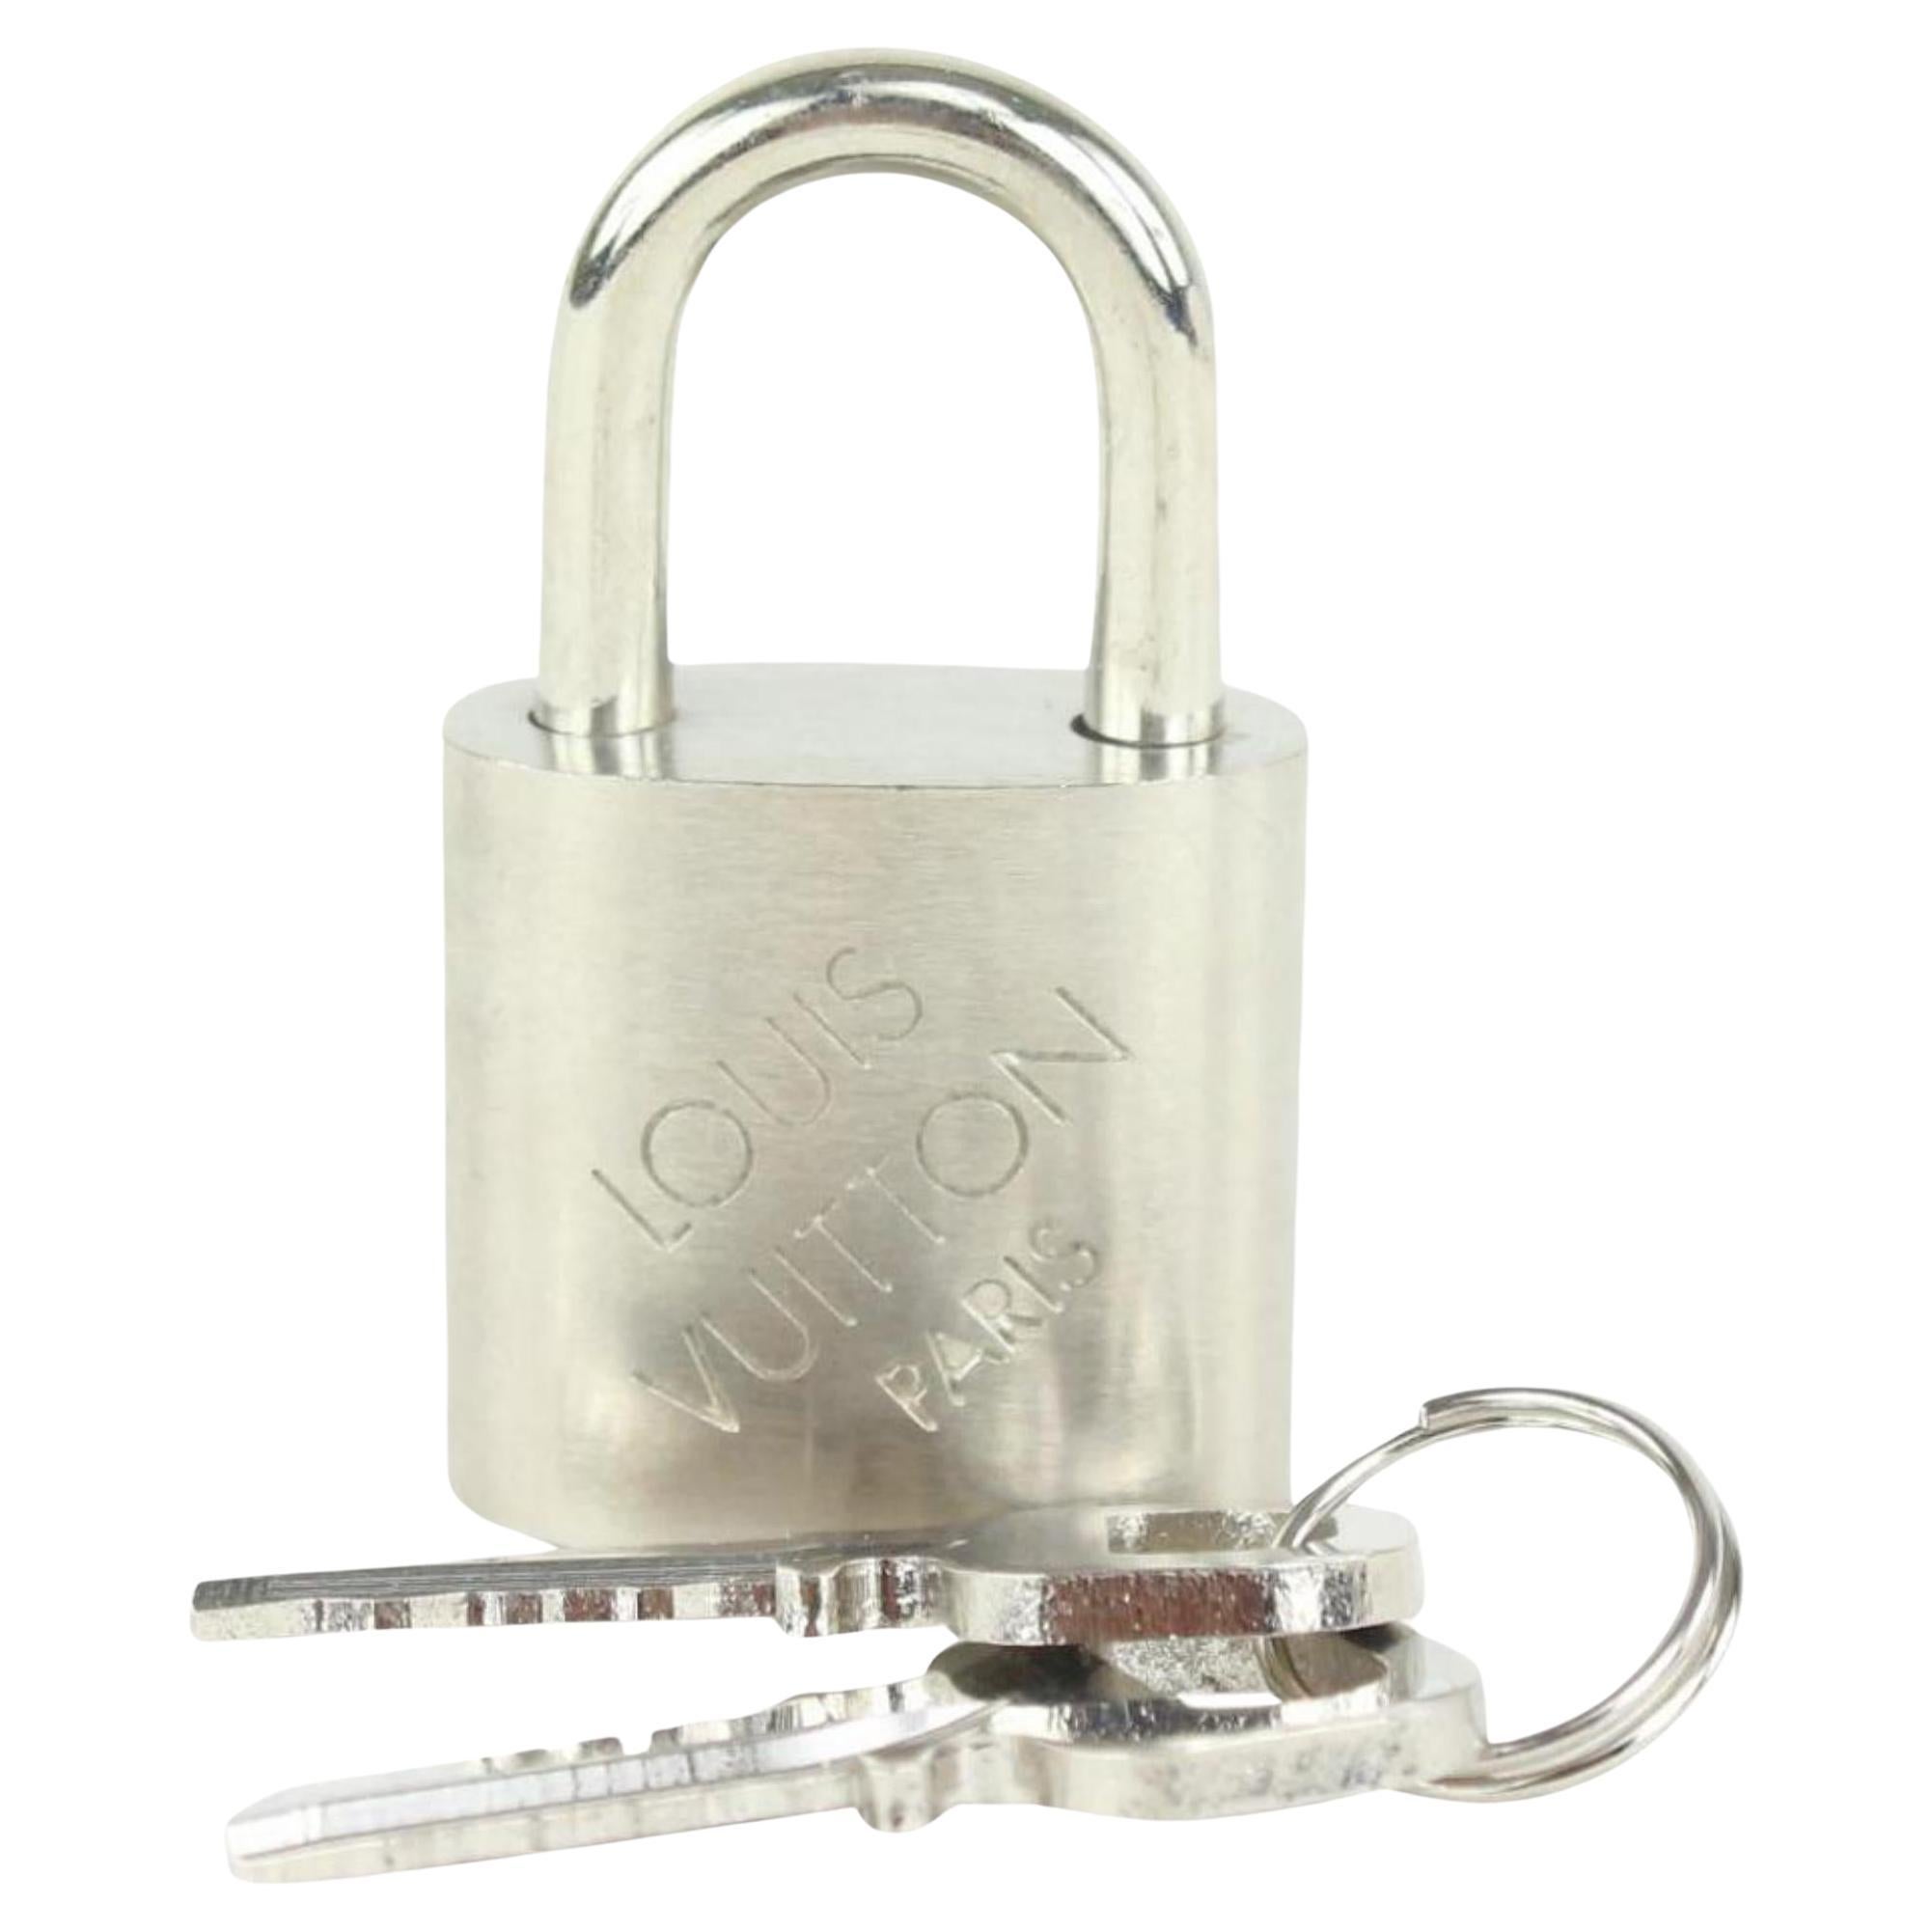 Louis Vuitton Brushed Silver LV Padlock and Key Lock Set 1019lv13